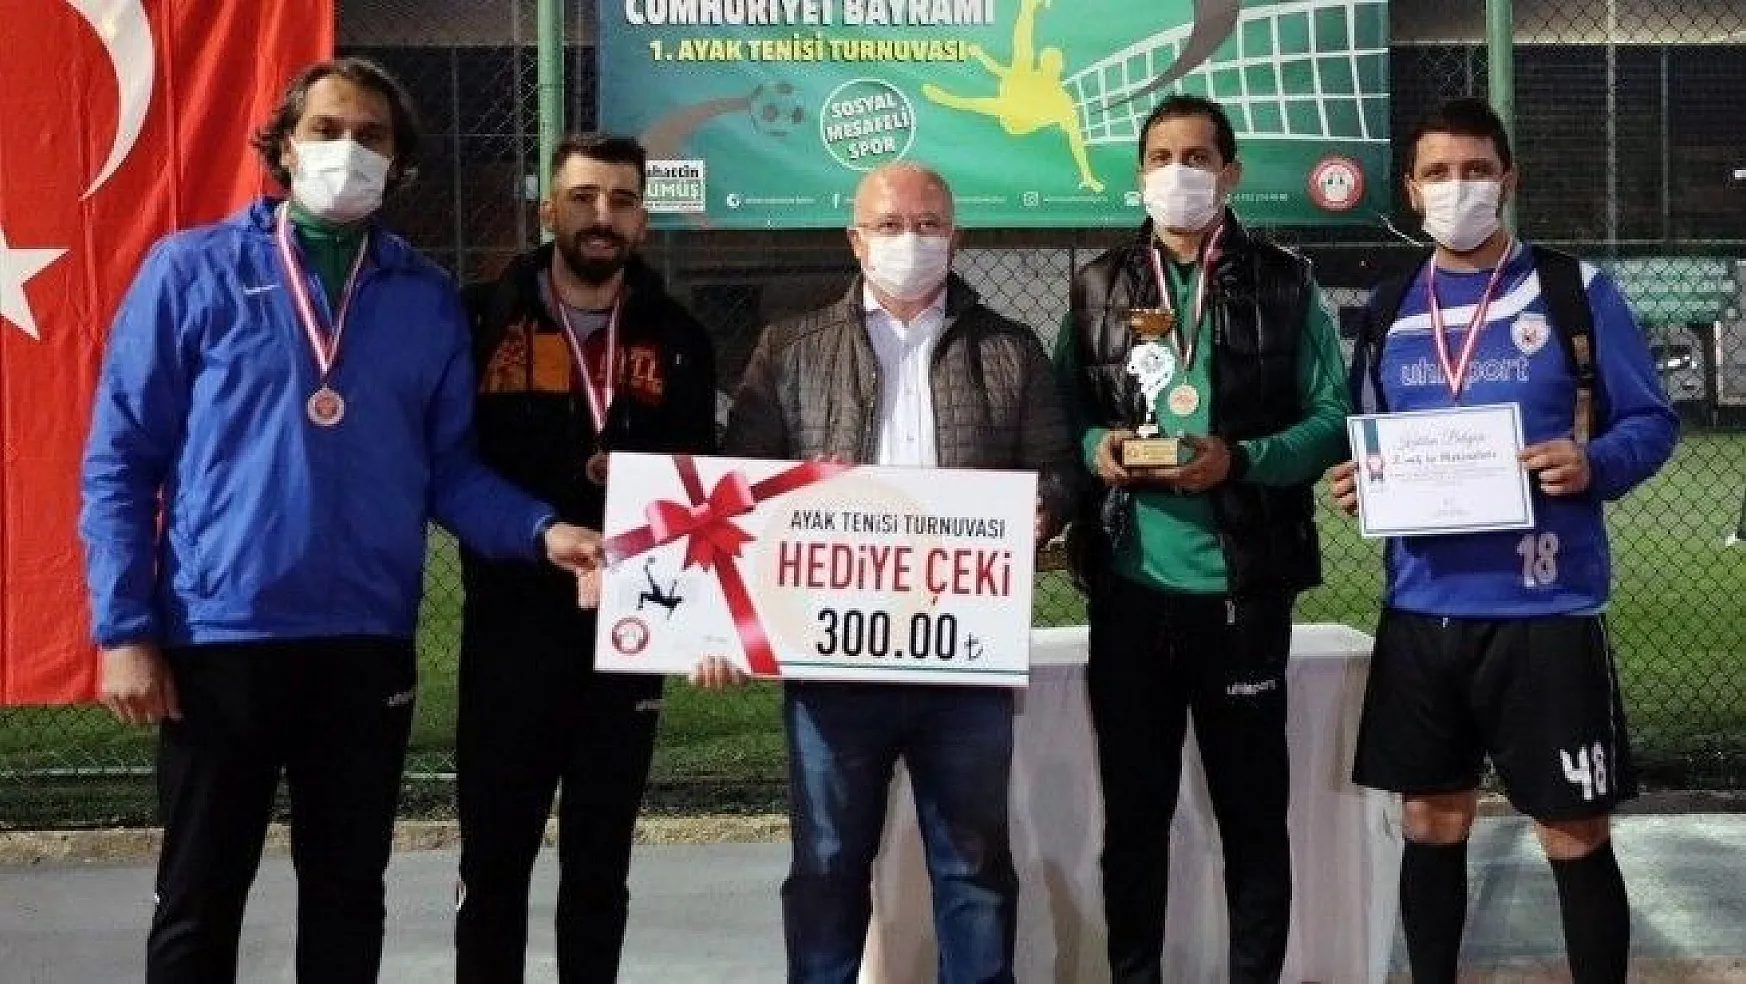 Ayak Tenisi Turnuvası'nda ödüller sahiplerini buldu